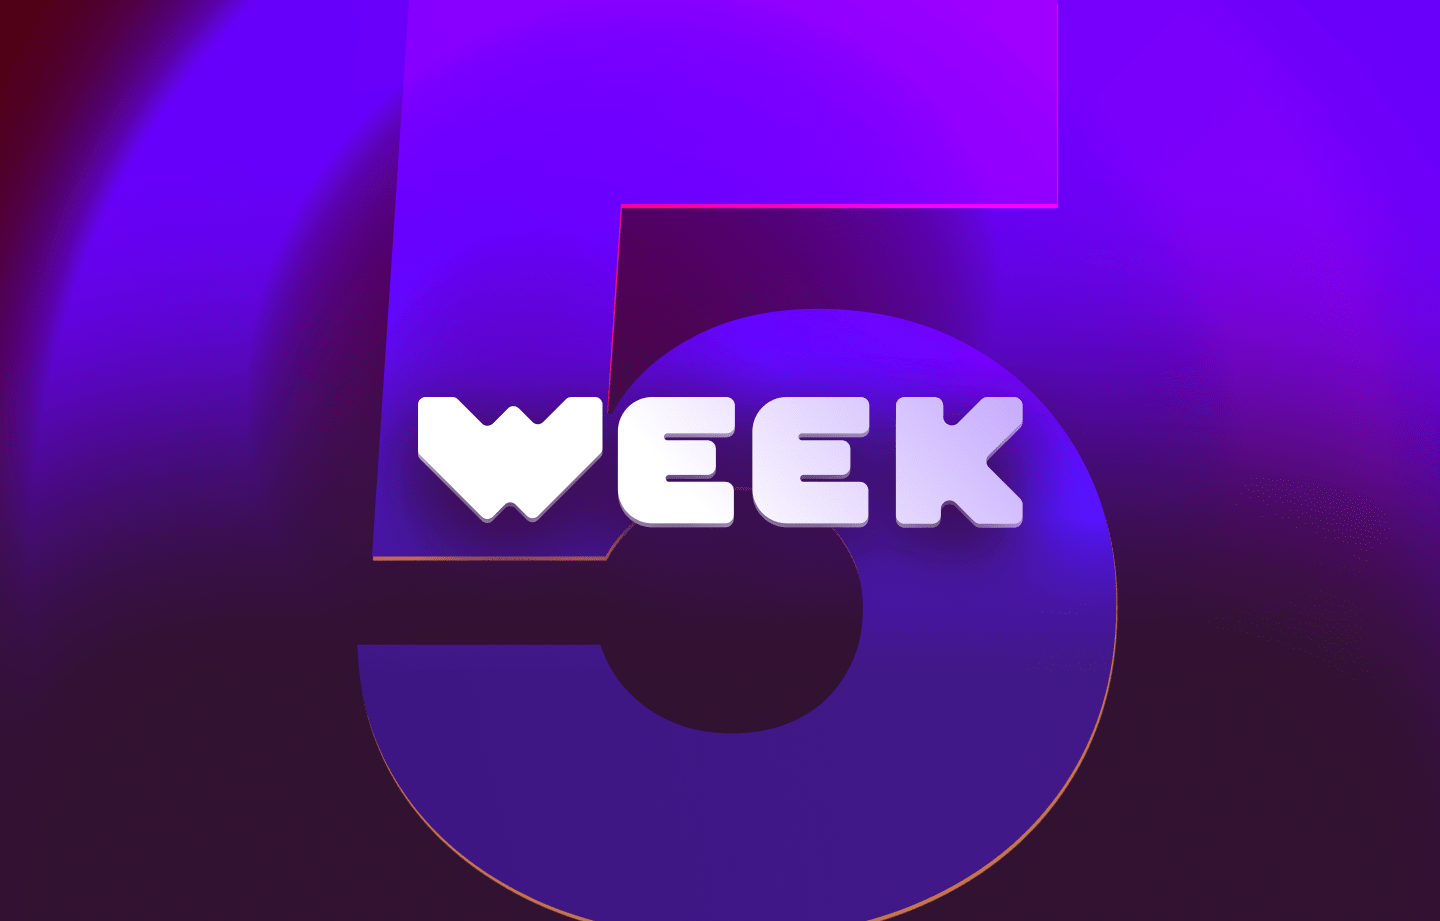 This week in web3 #5